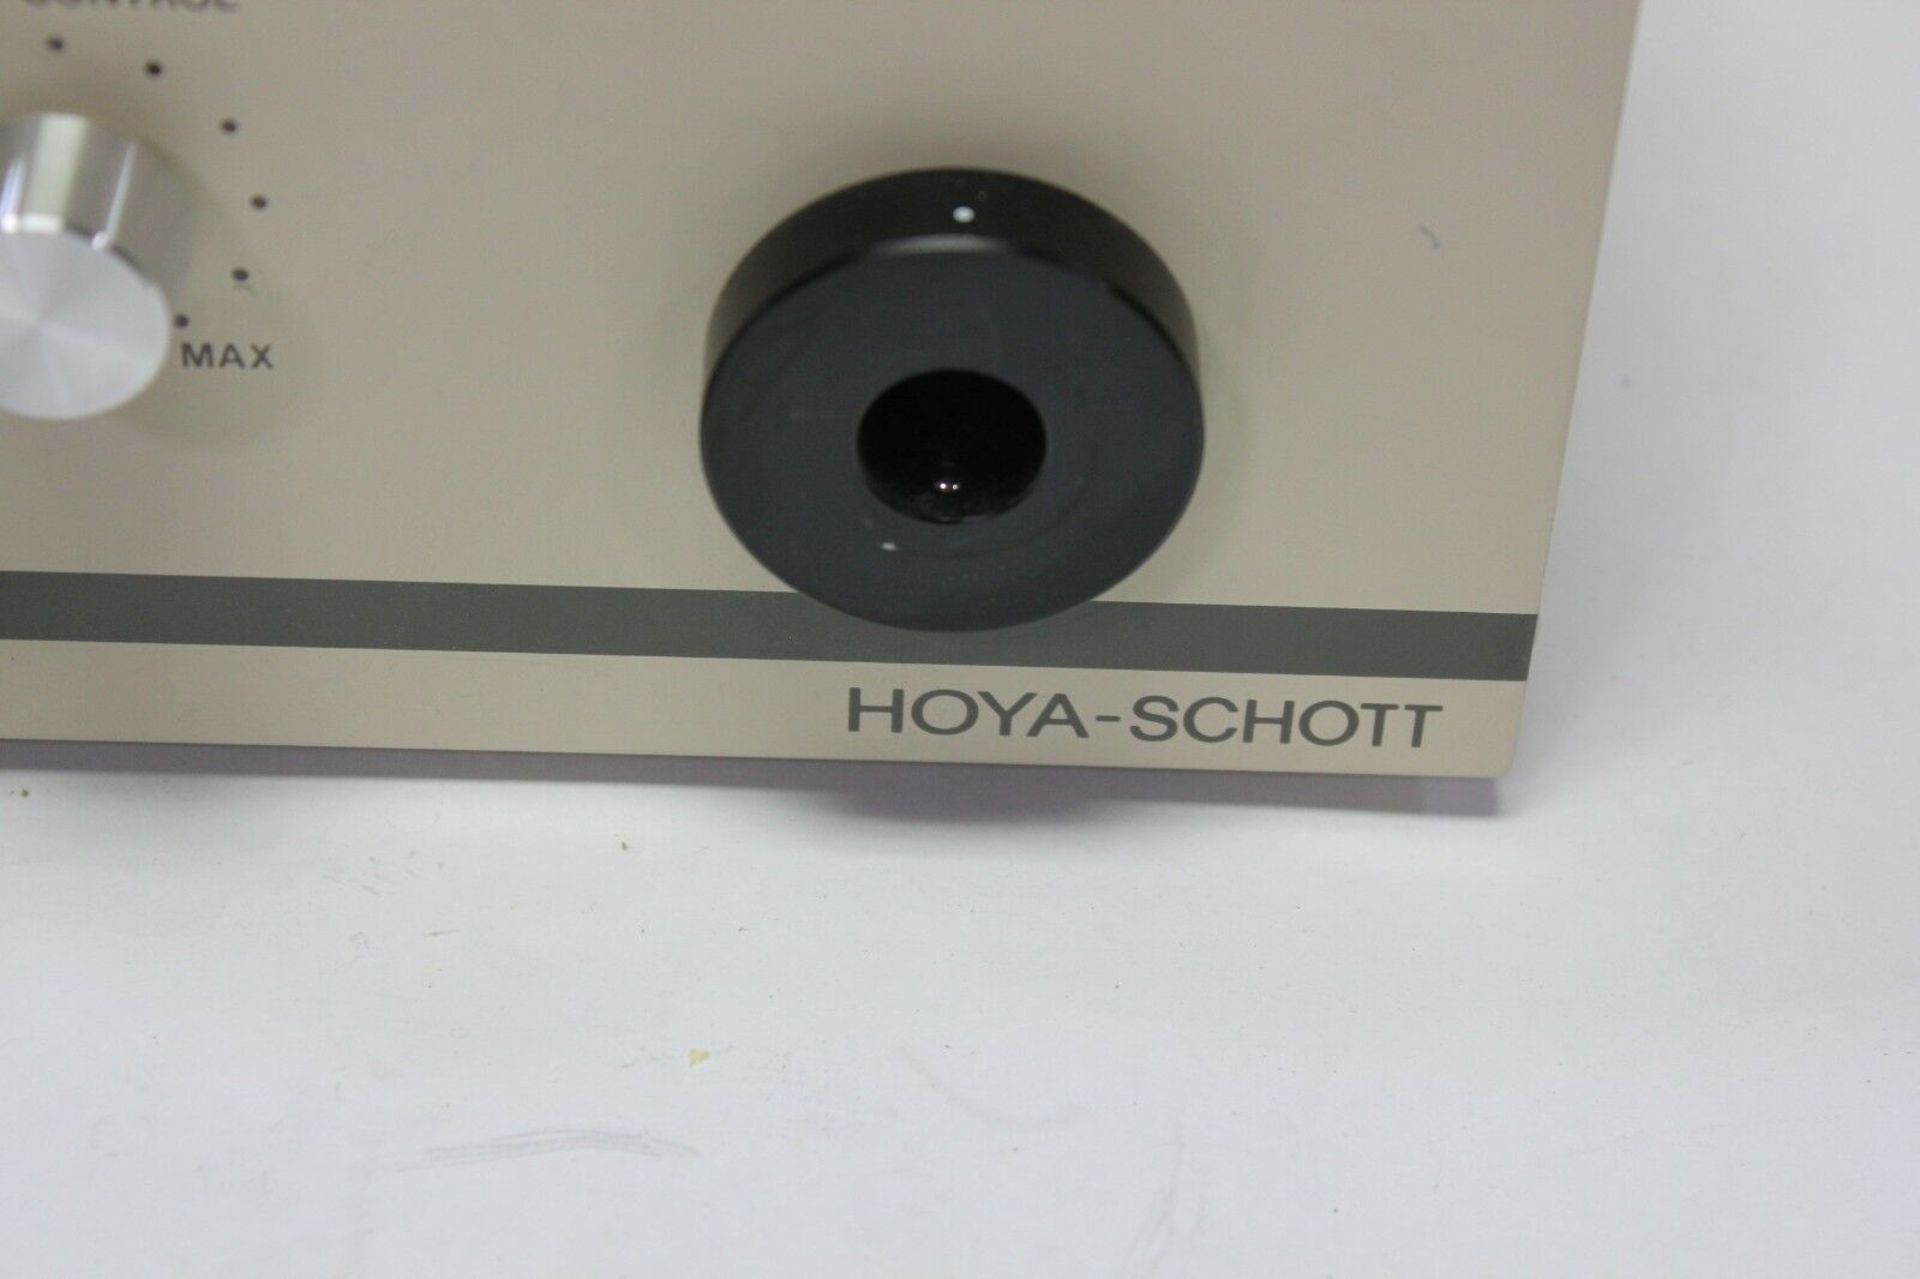 HOYA-SCHOTT COLD LIGHT SOURCE - Image 3 of 3